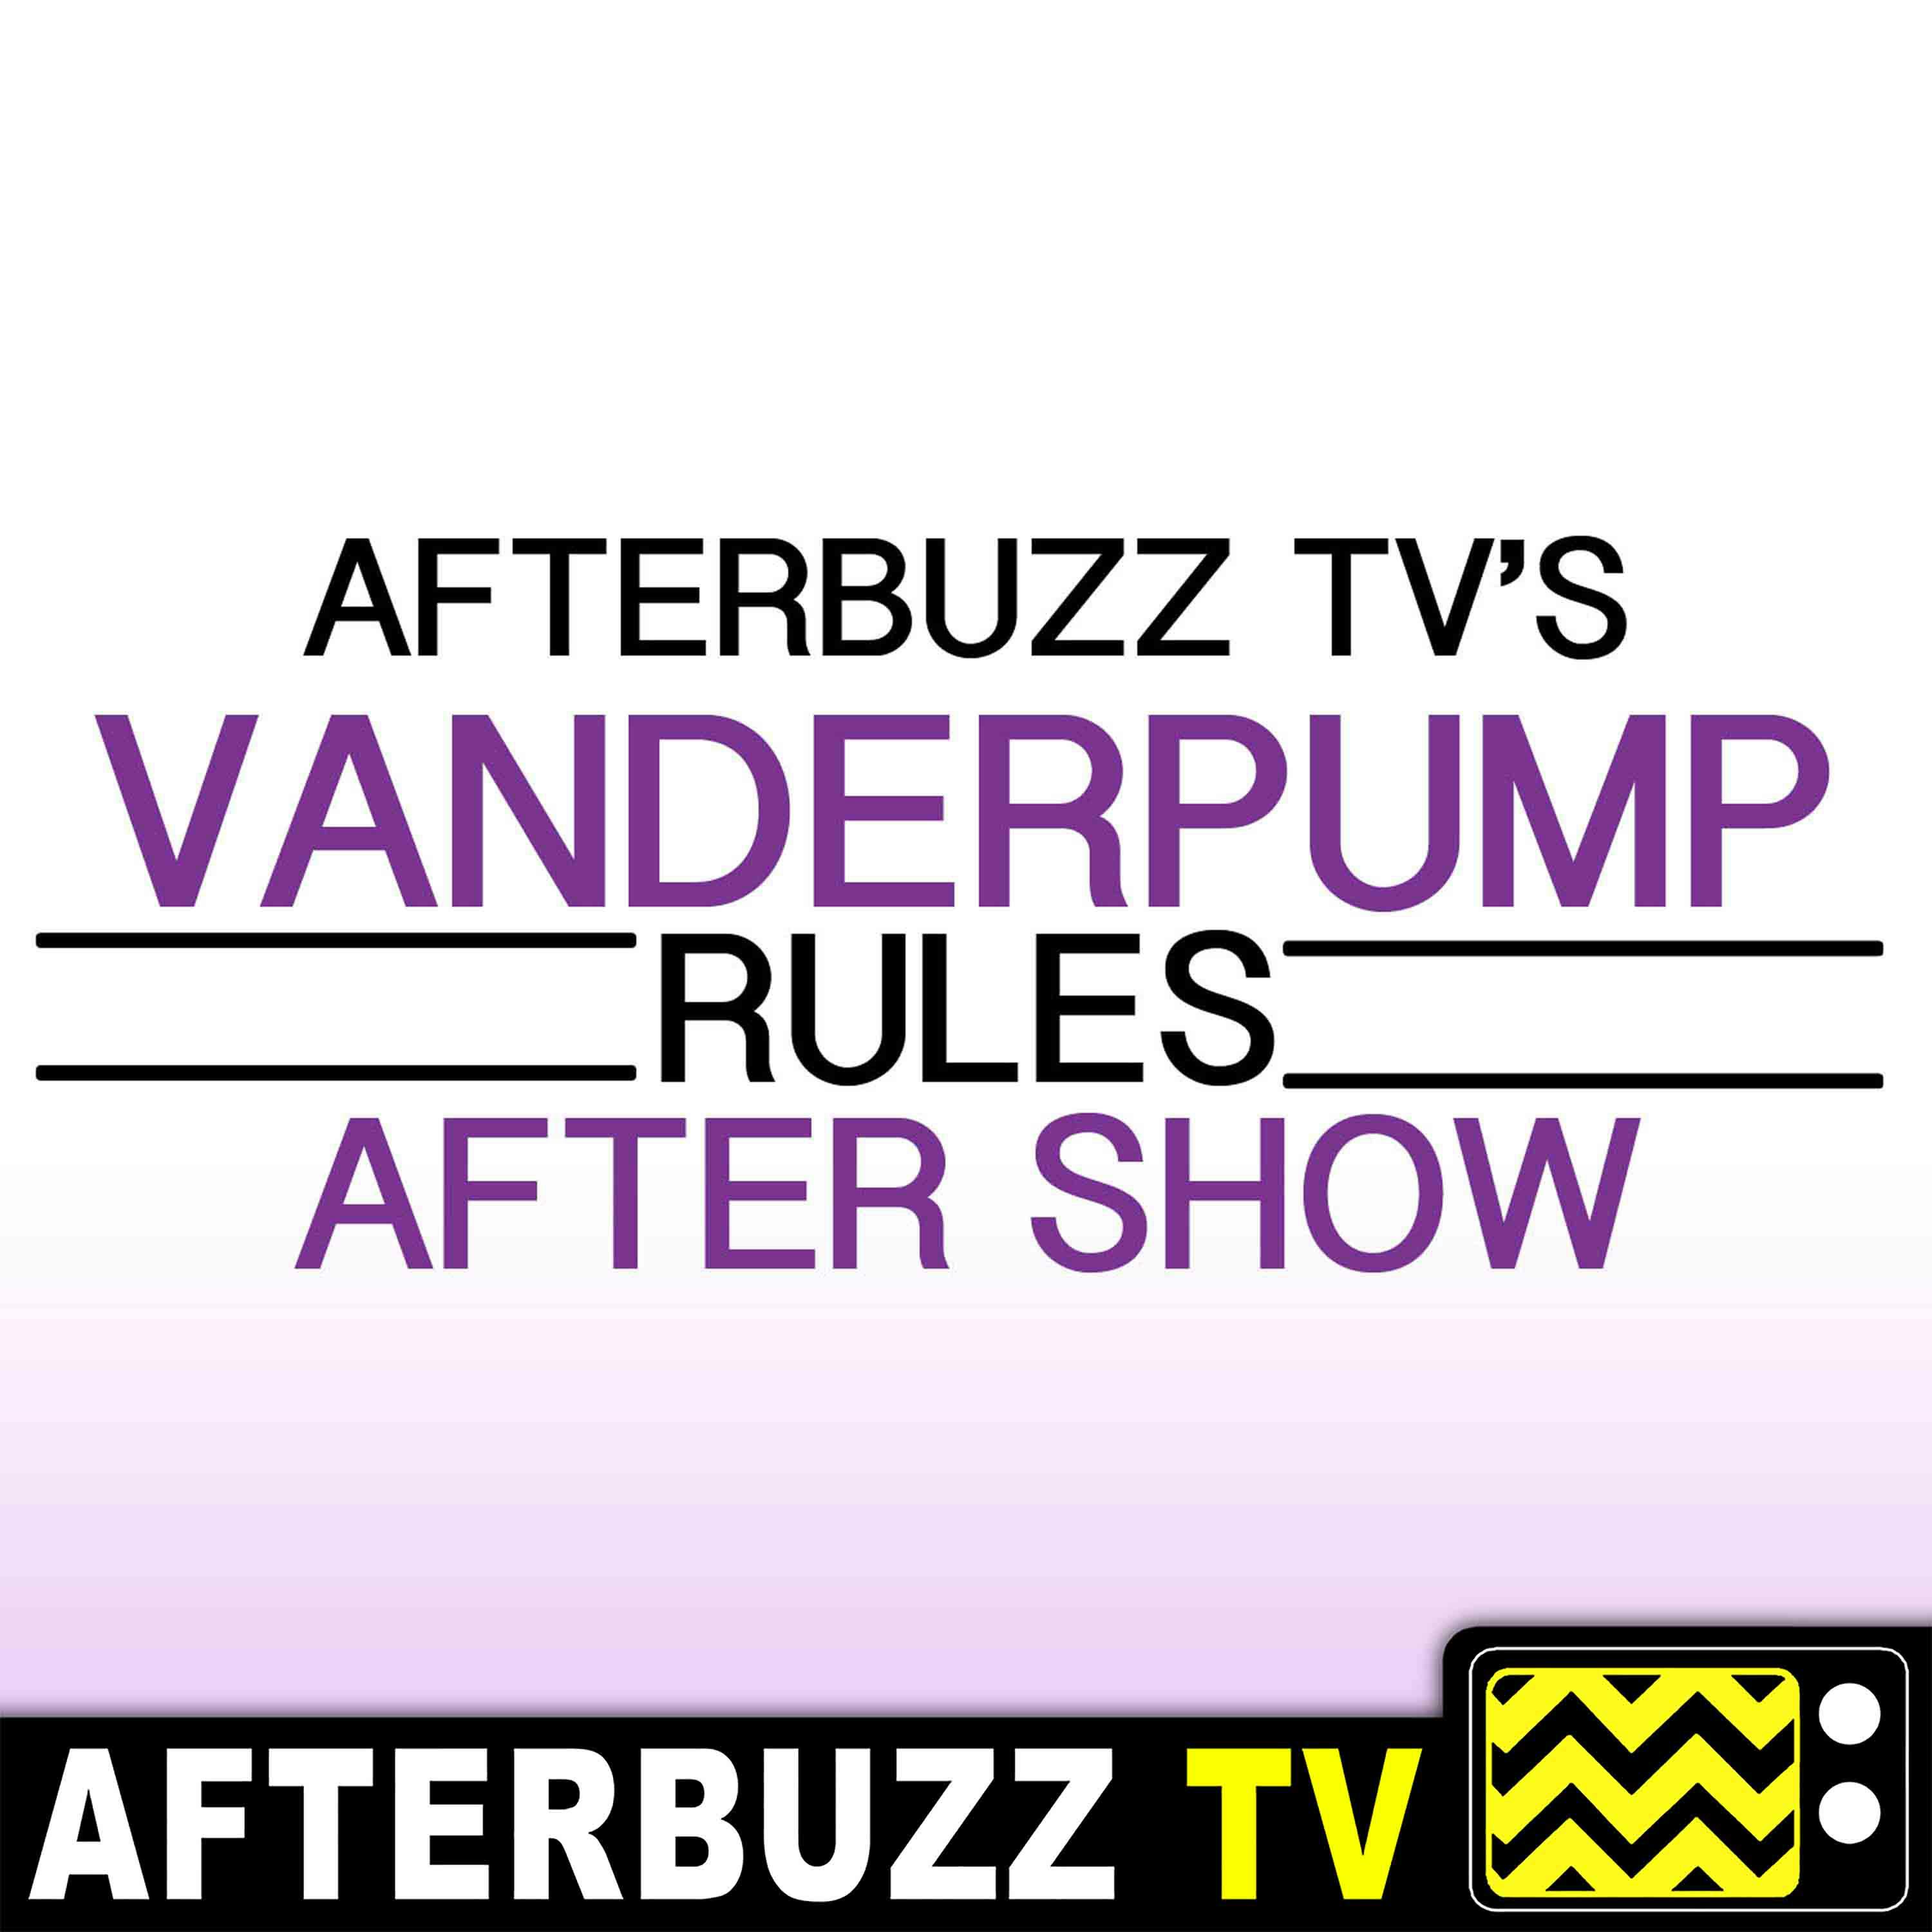 "Reunion Part 3" Season 7 Episode 23 'Vanderpump Rules' Review